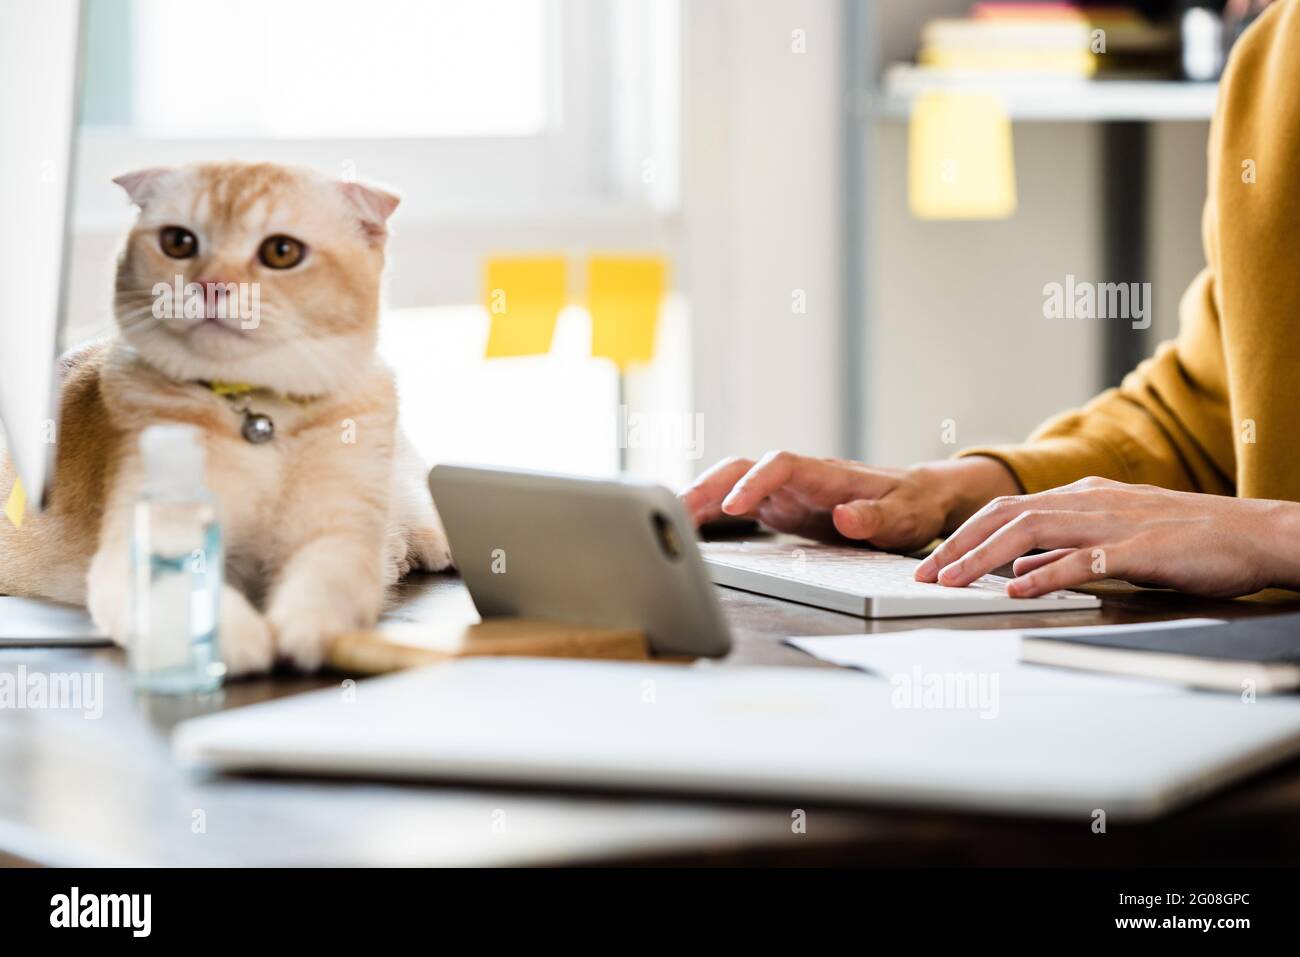 Une jeune femme tape sur un clavier d'ordinateur travaillant à la maison avec un joli chat sur la table Banque D'Images